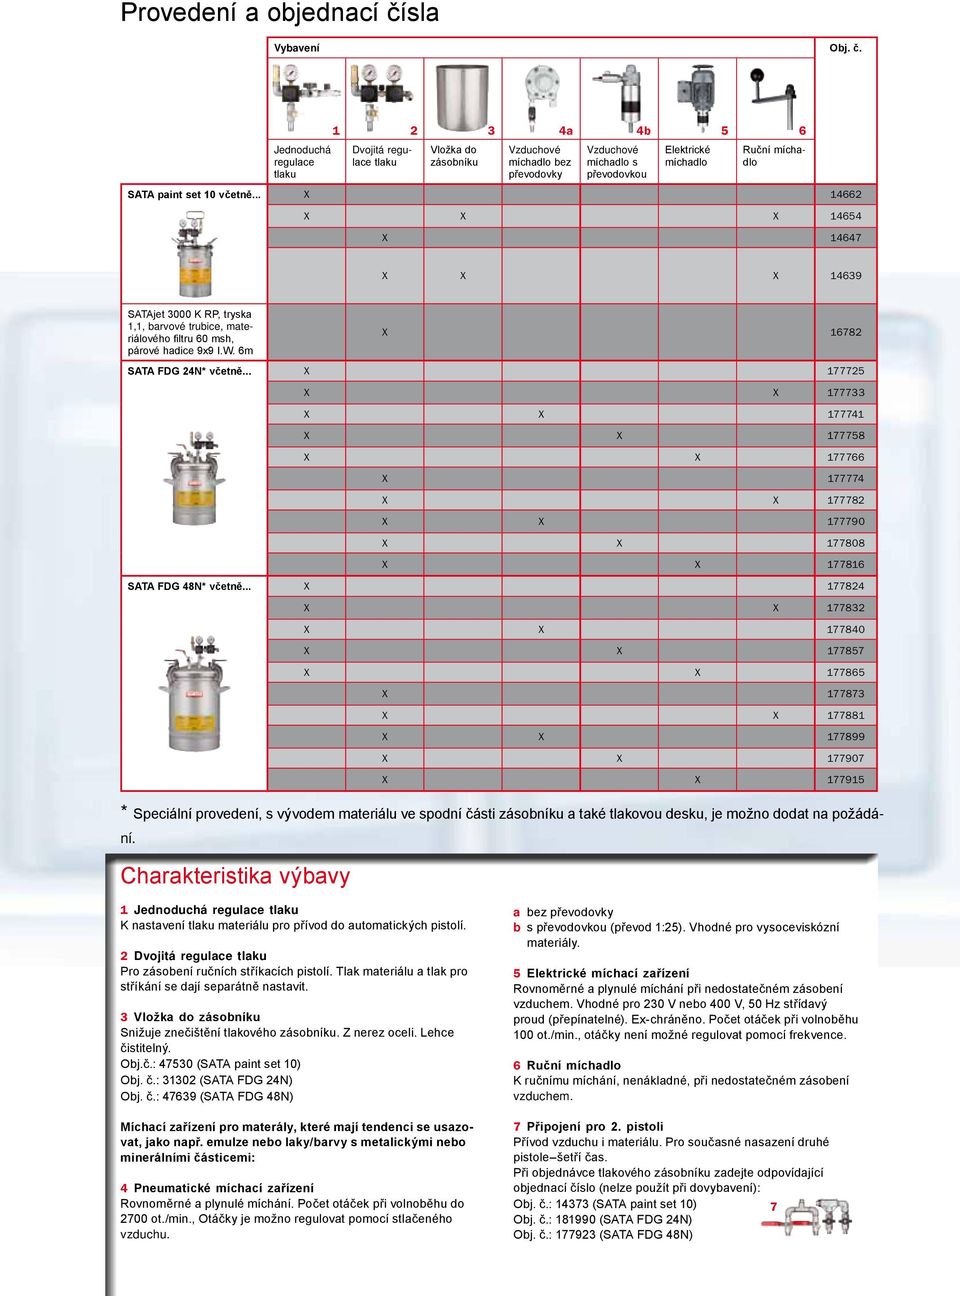 Jednoduchá regulace 1 2 3 4a 4b 5 6 Dvojitá regulace Vložka do zásobníku Vzduchové míchadlo bez převodovky Vzduchové míchadlo s převodovkou Elektrické míchadlo Ruční míchadlo SATA paint set 10 včetně.